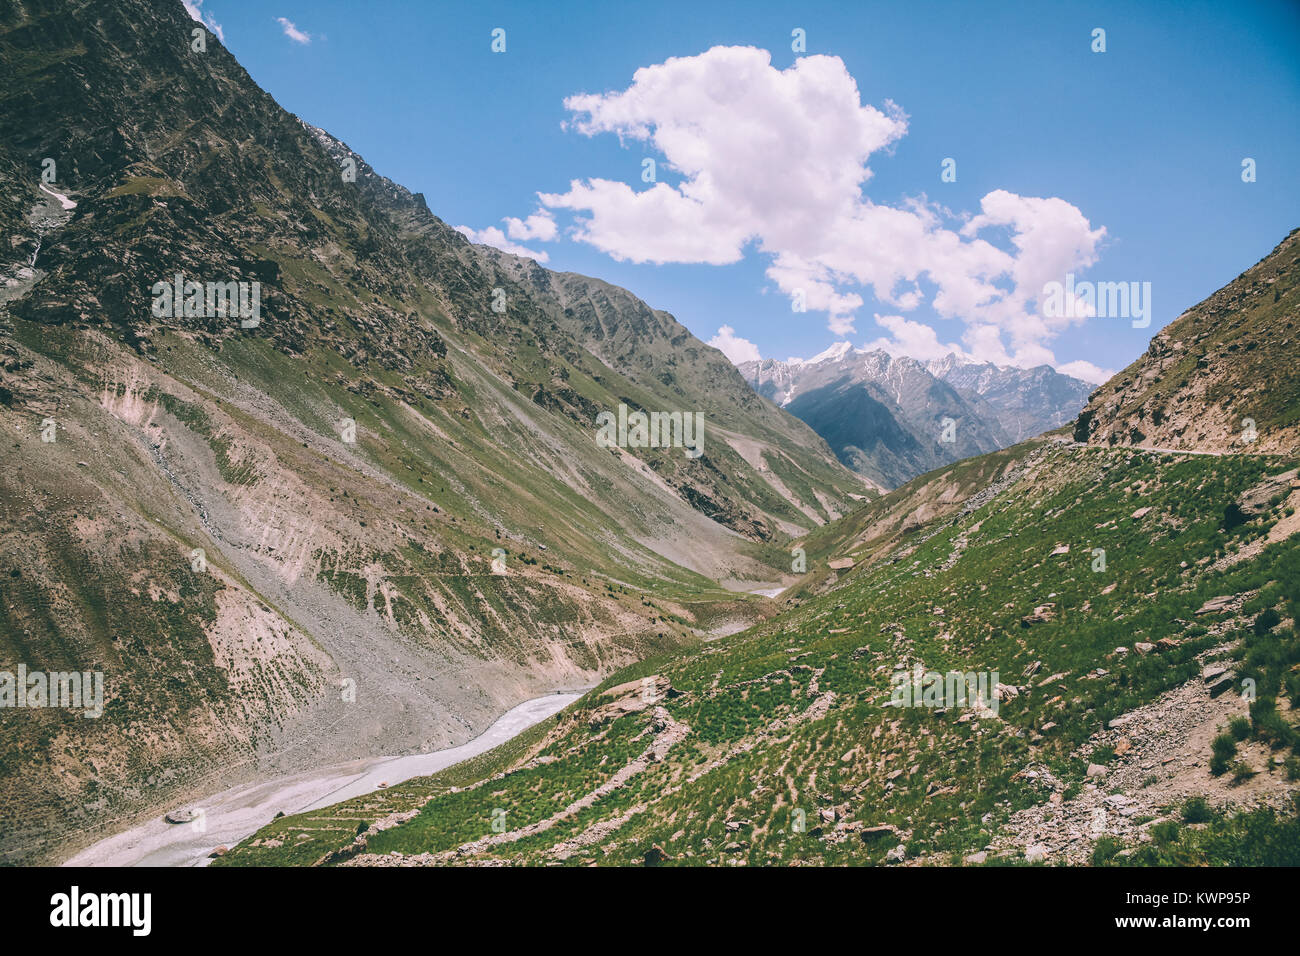 Scène paisible avec majestic Mountain Valley dans la région de Ladakh, Himalaya Indien Banque D'Images